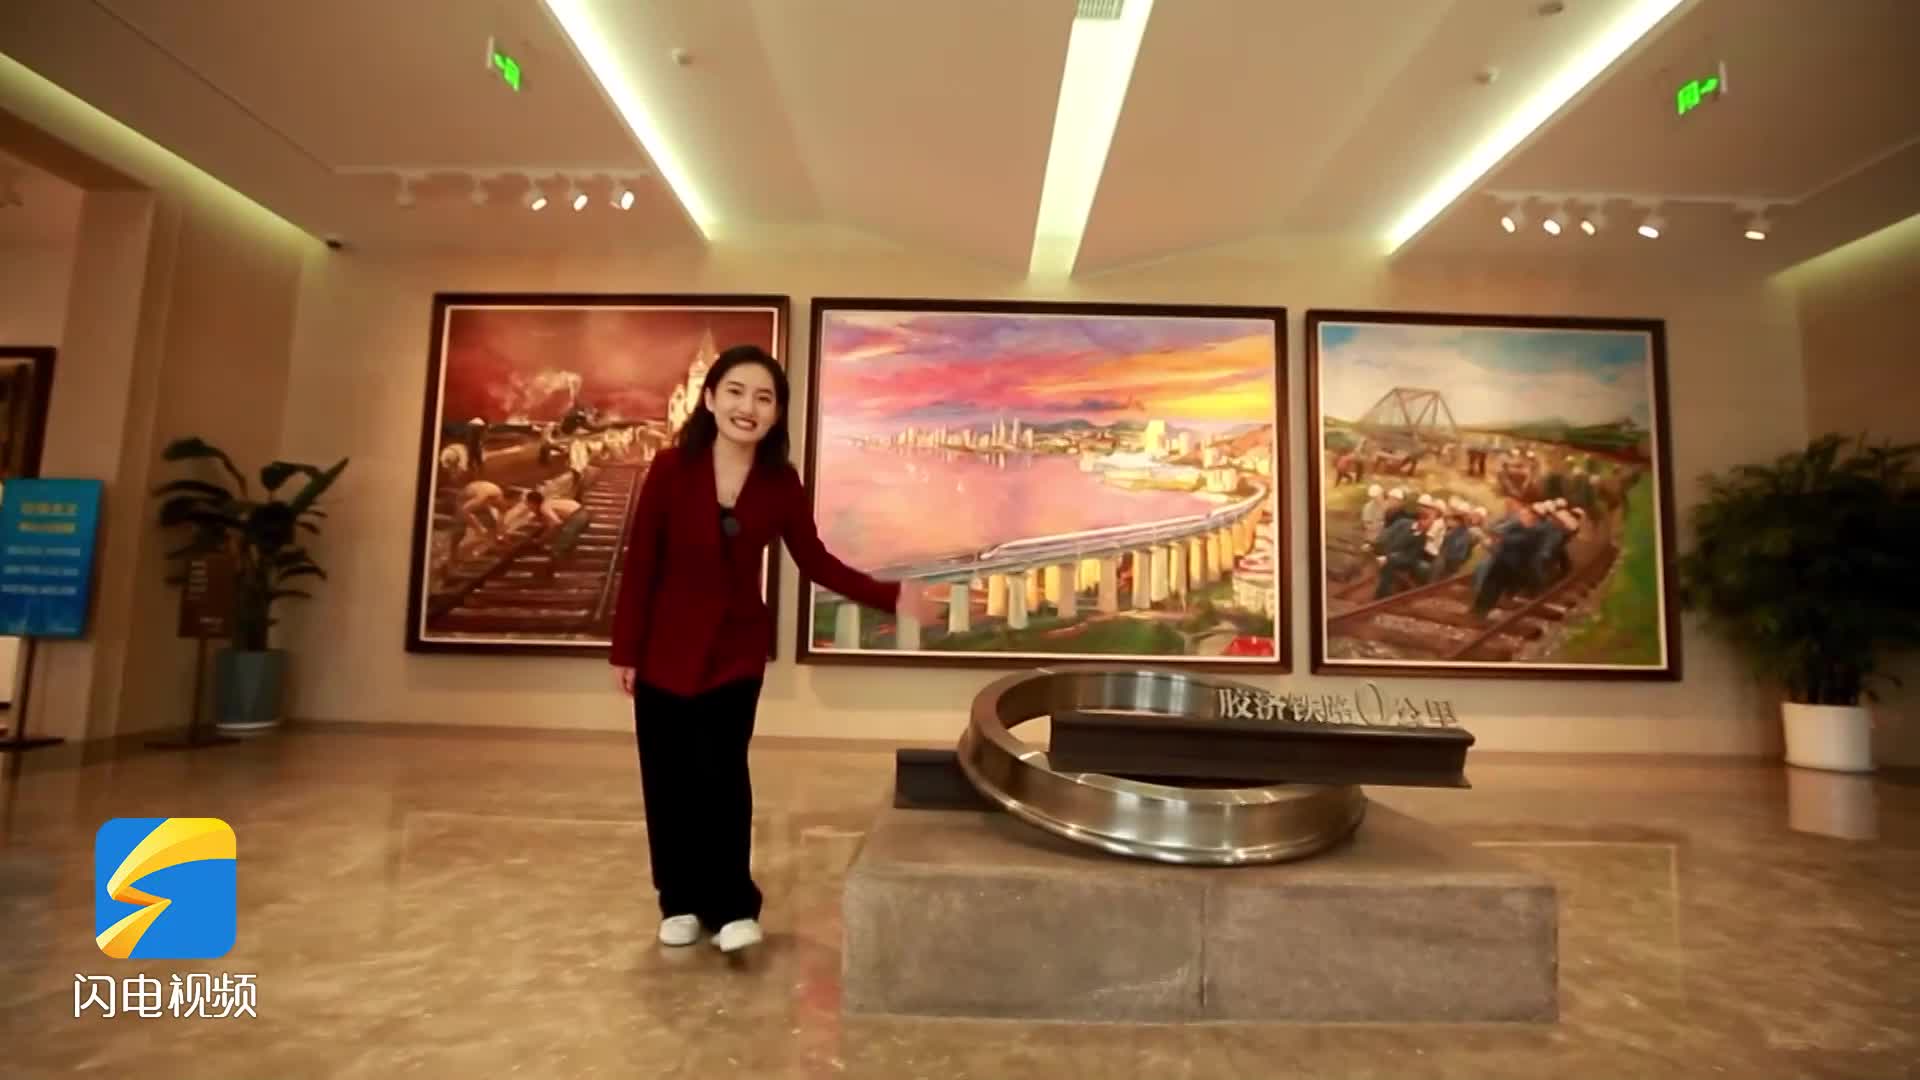 行走百年胶济 高铁环游齐鲁丨打卡青岛胶济铁路博物馆